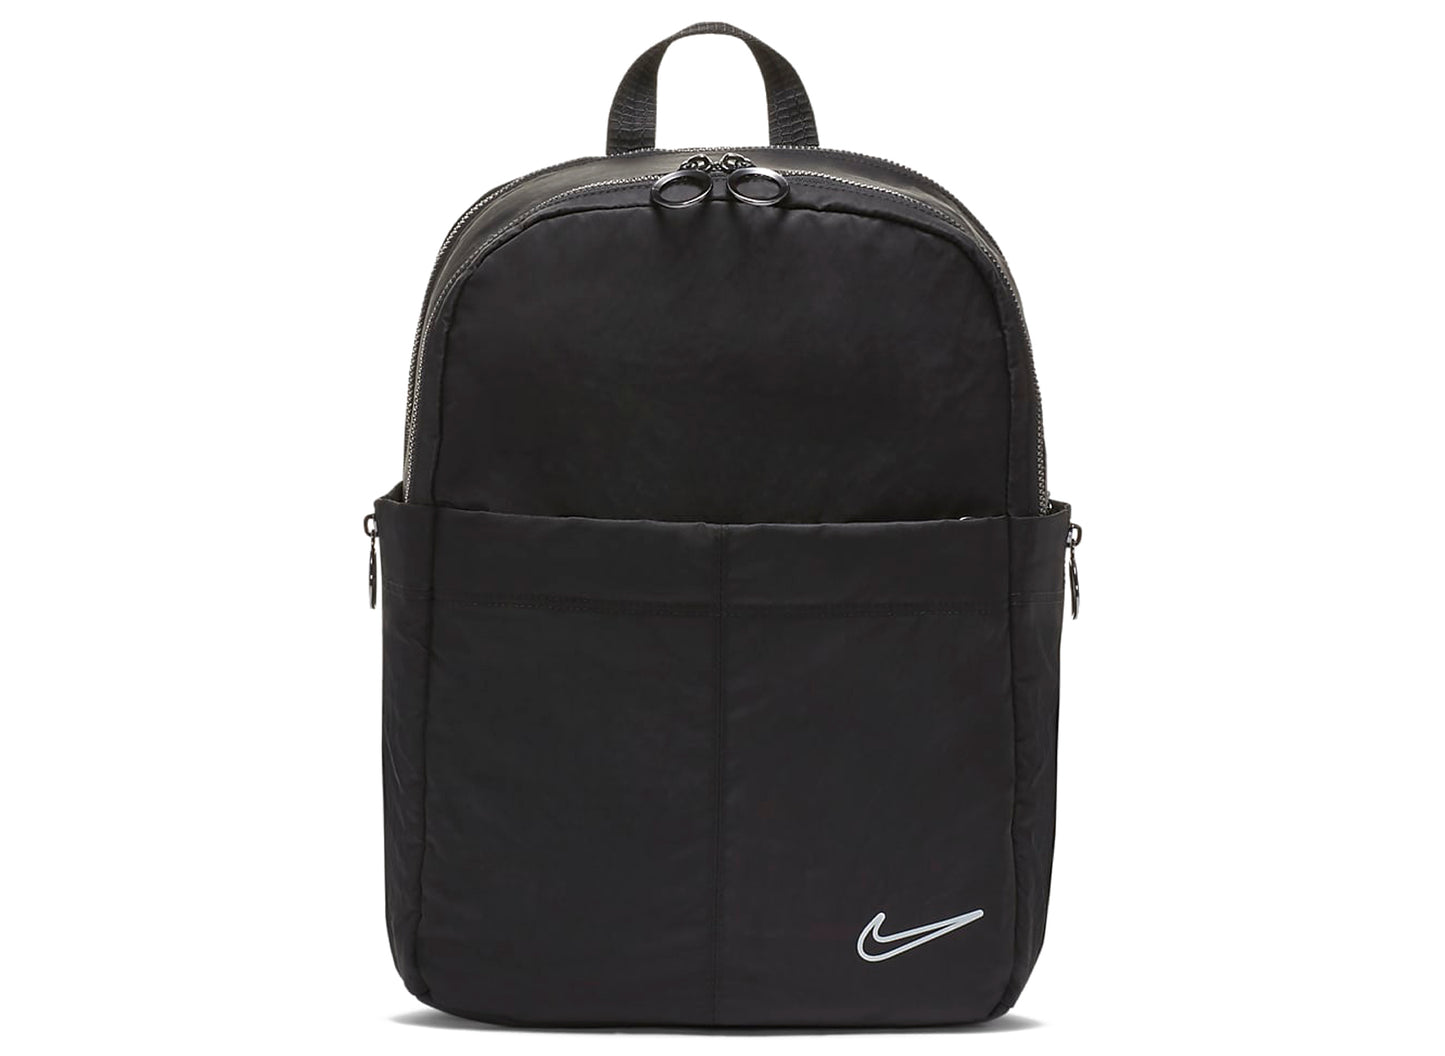 CapCut_nike one luxe backpack